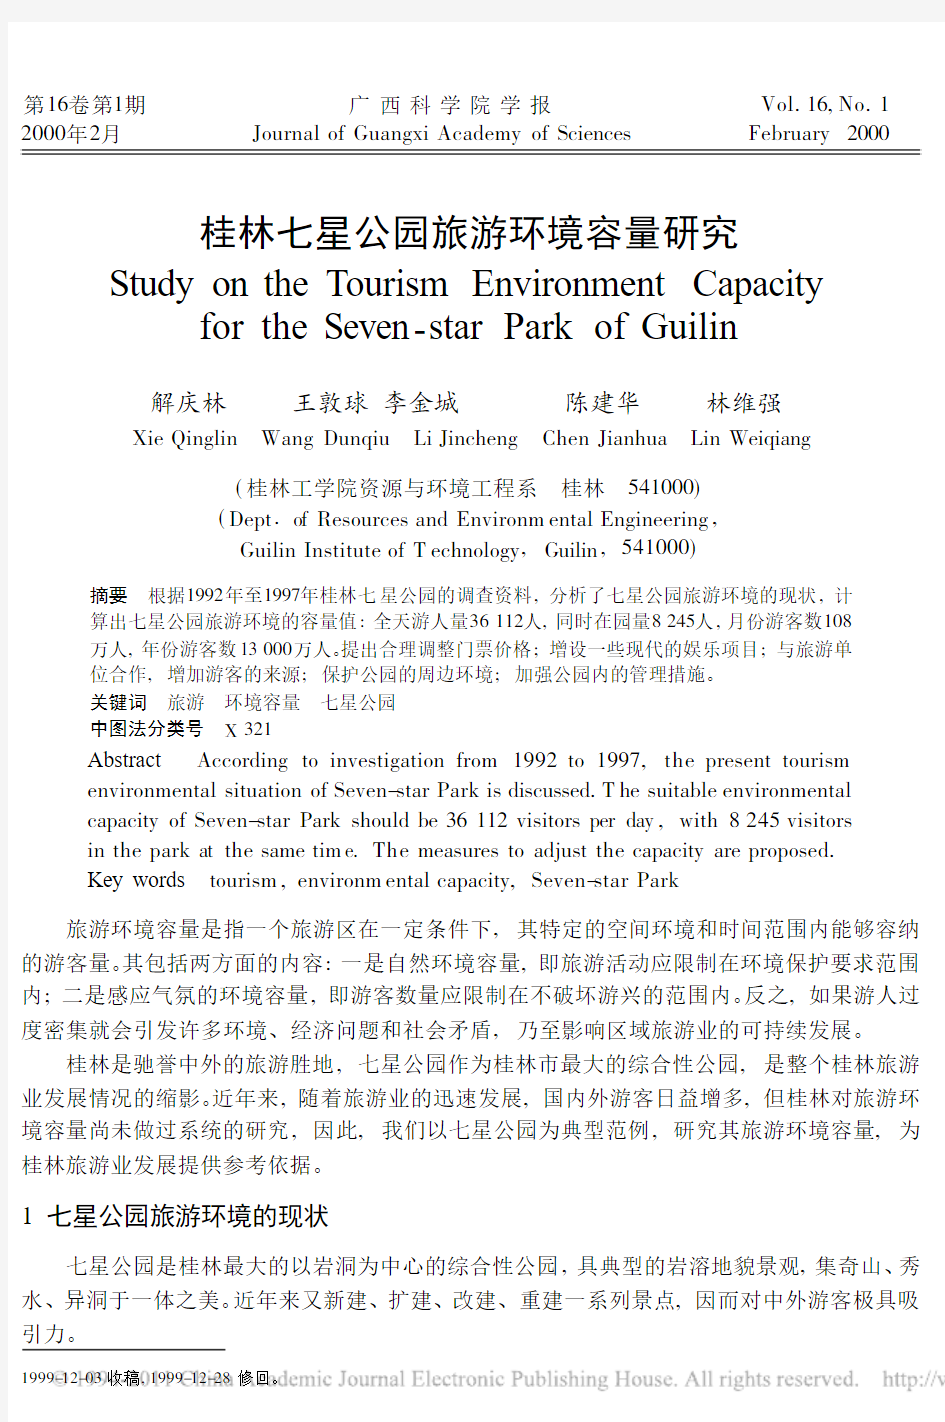 桂林七星公园旅游环境容量研究